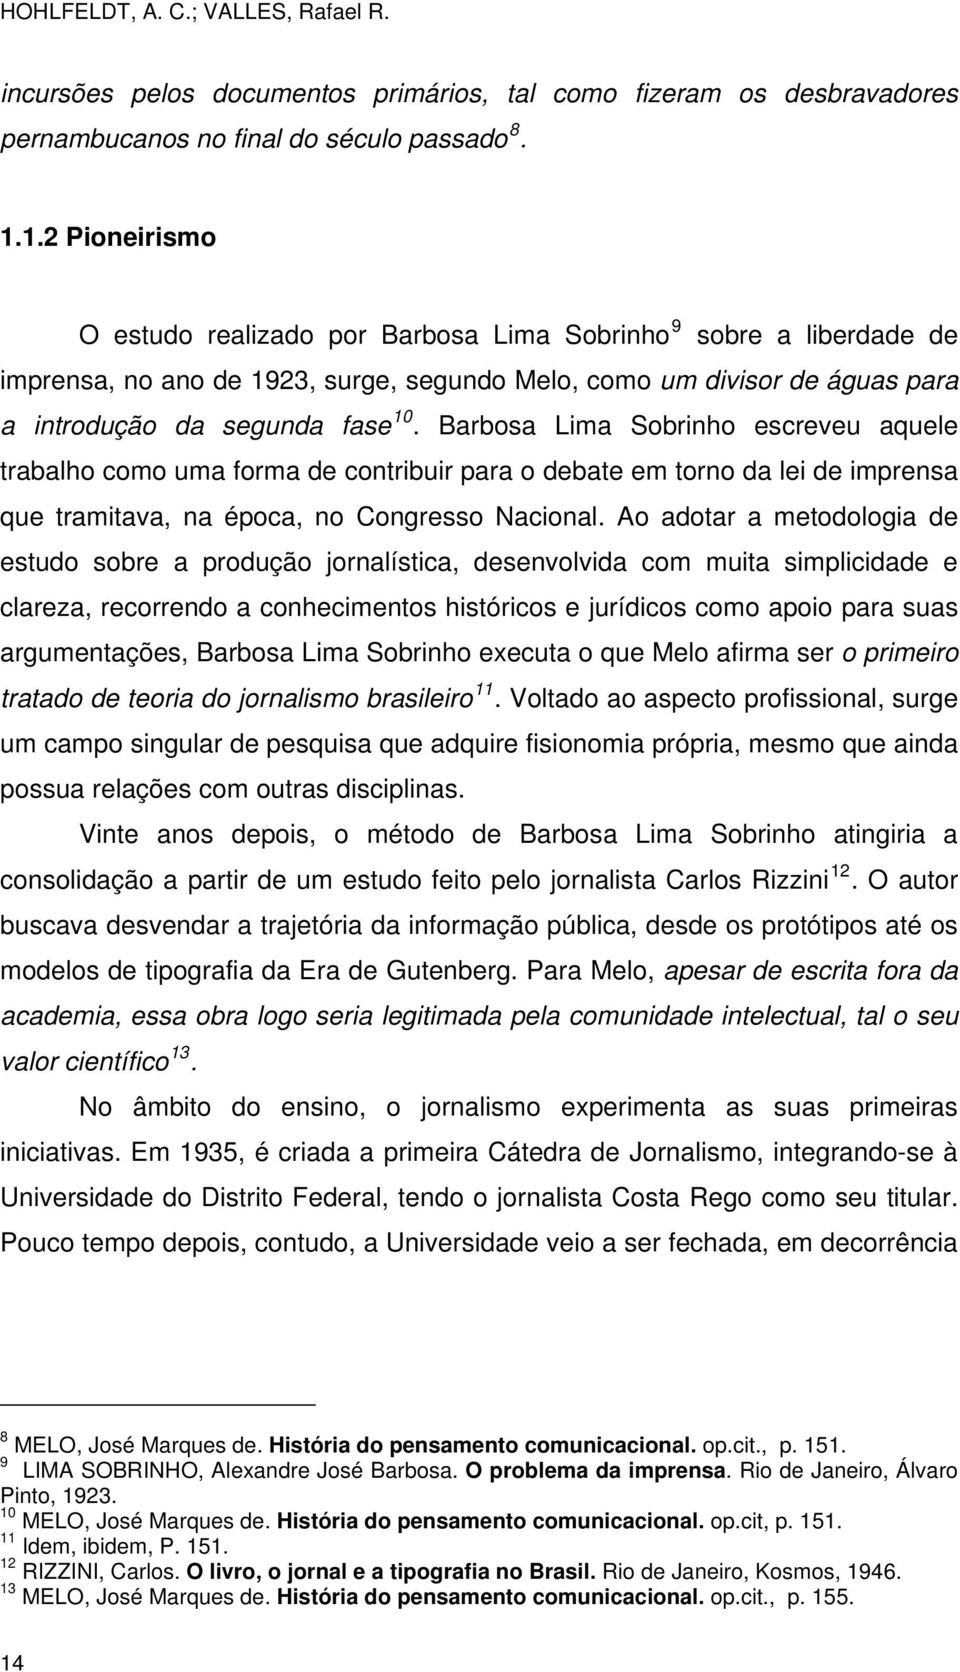 Barbosa Lima Sobrinho escreveu aquele trabalho como uma forma de contribuir para o debate em torno da lei de imprensa que tramitava, na época, no Congresso Nacional.